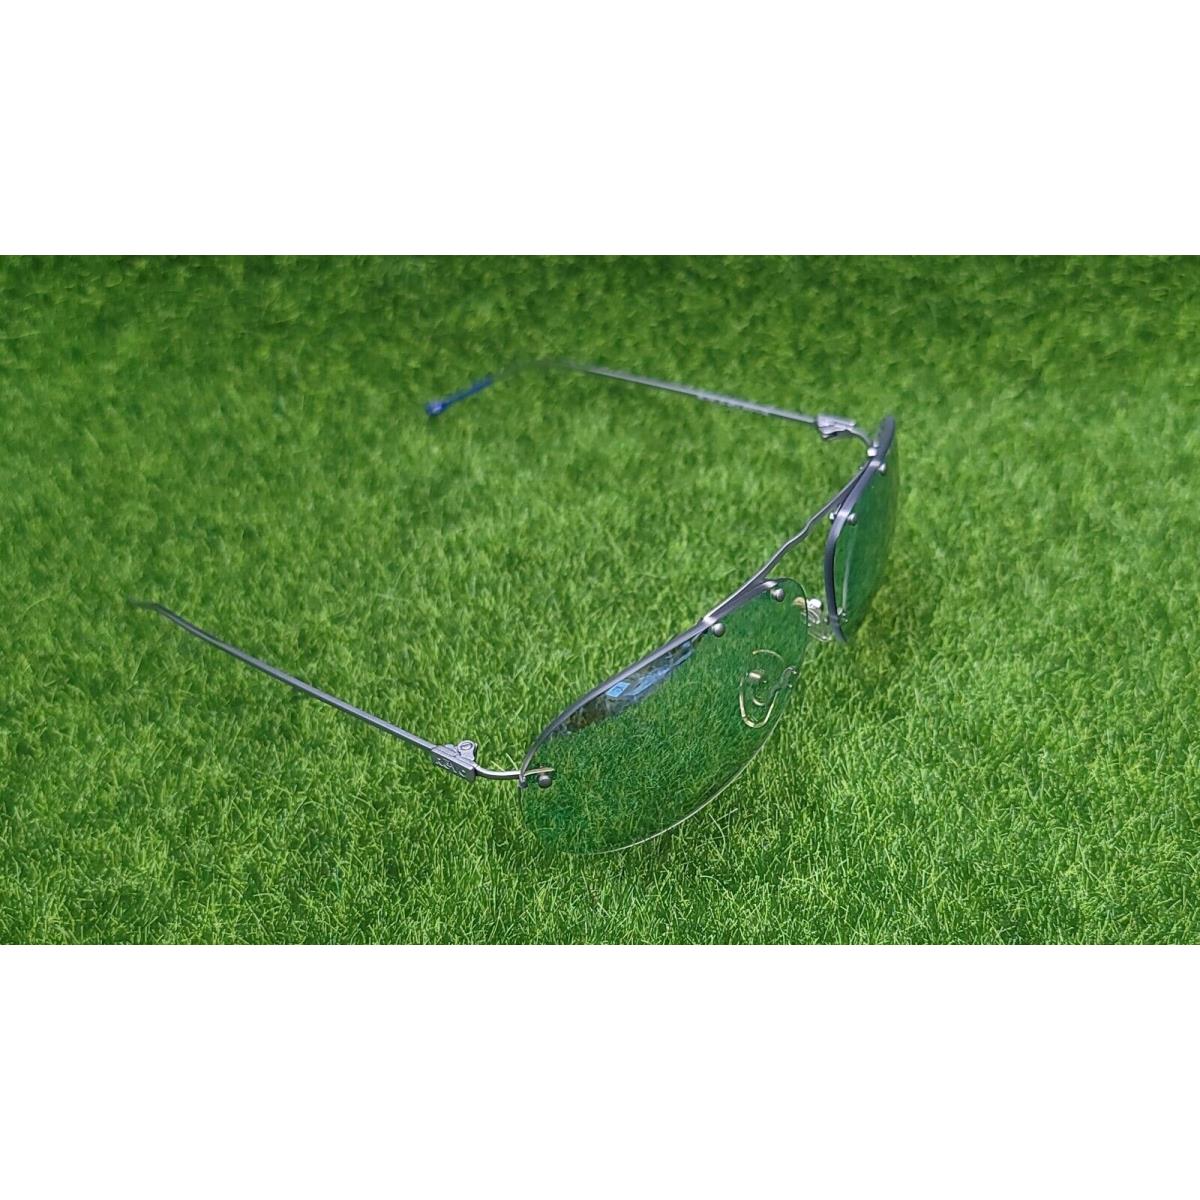 Revo sunglasses Black Air - Silver Frame, Blue Lens